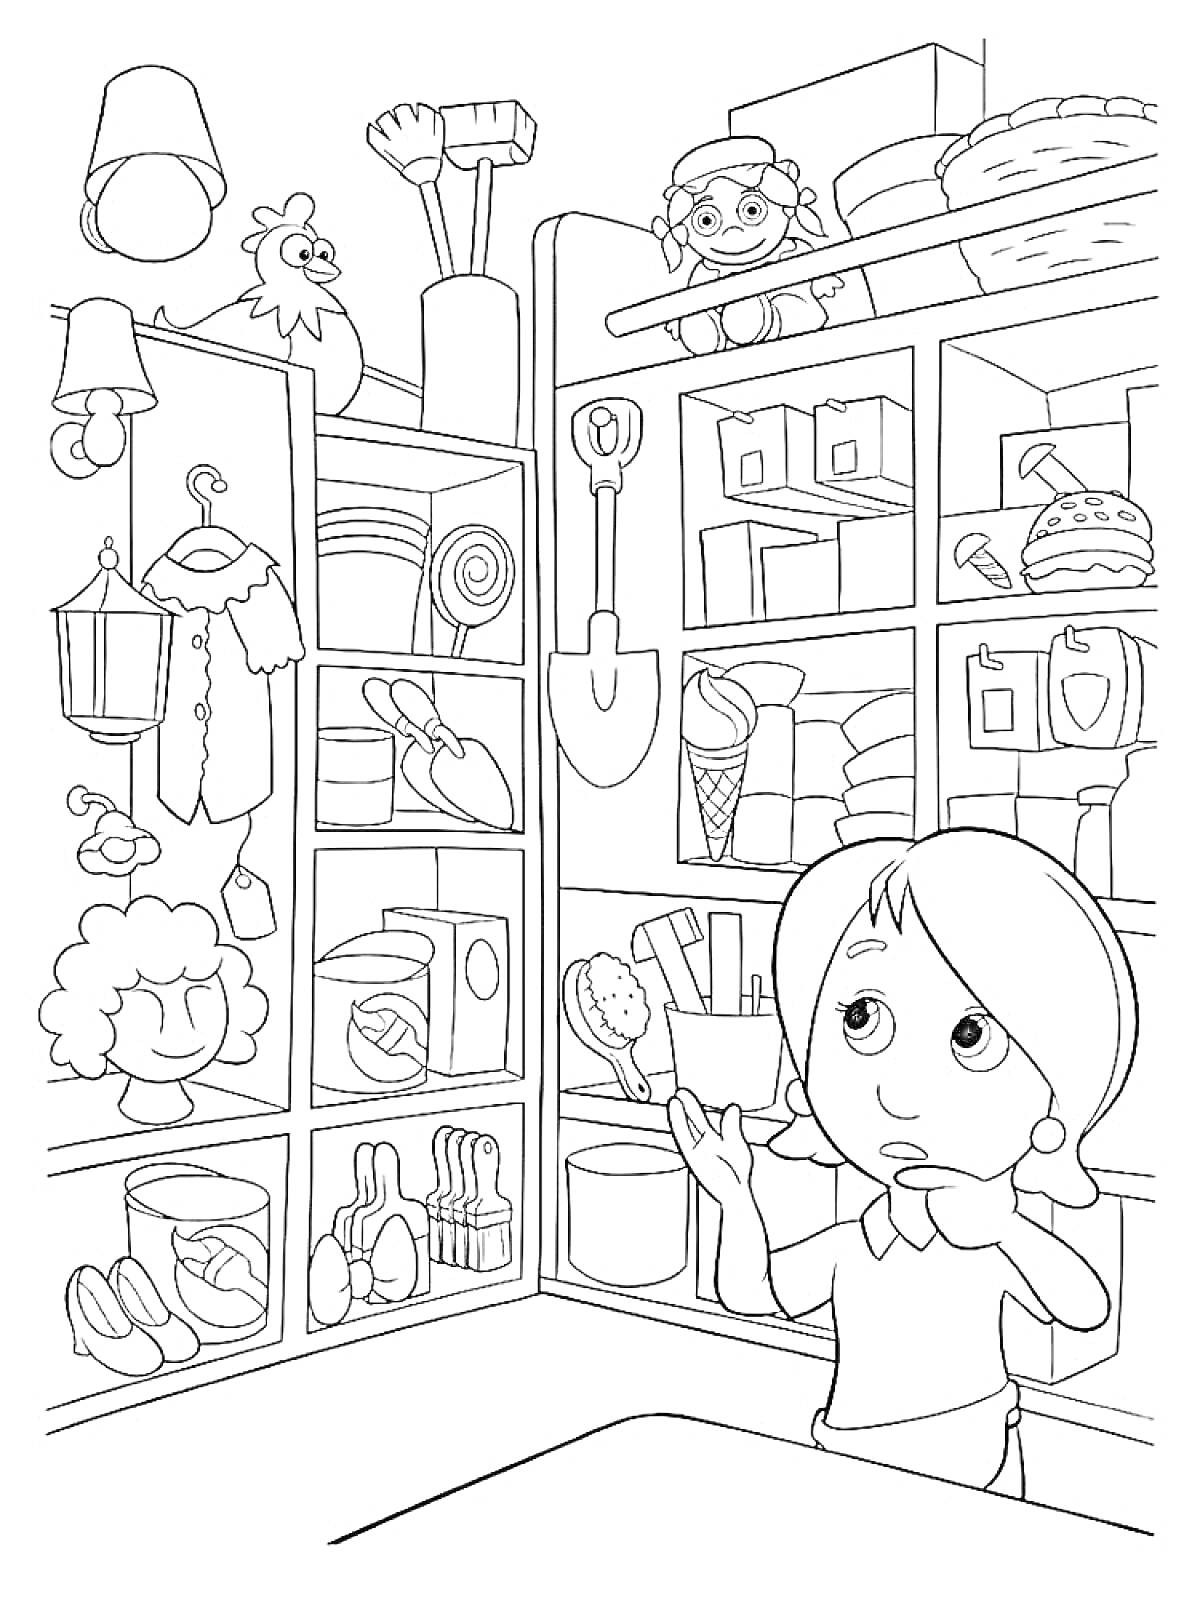 Раскраска Девочка в магазине игрушек с полками, полными игрушек, включая куклы, мяч, машинки, мягкие игрушки и другие предметы